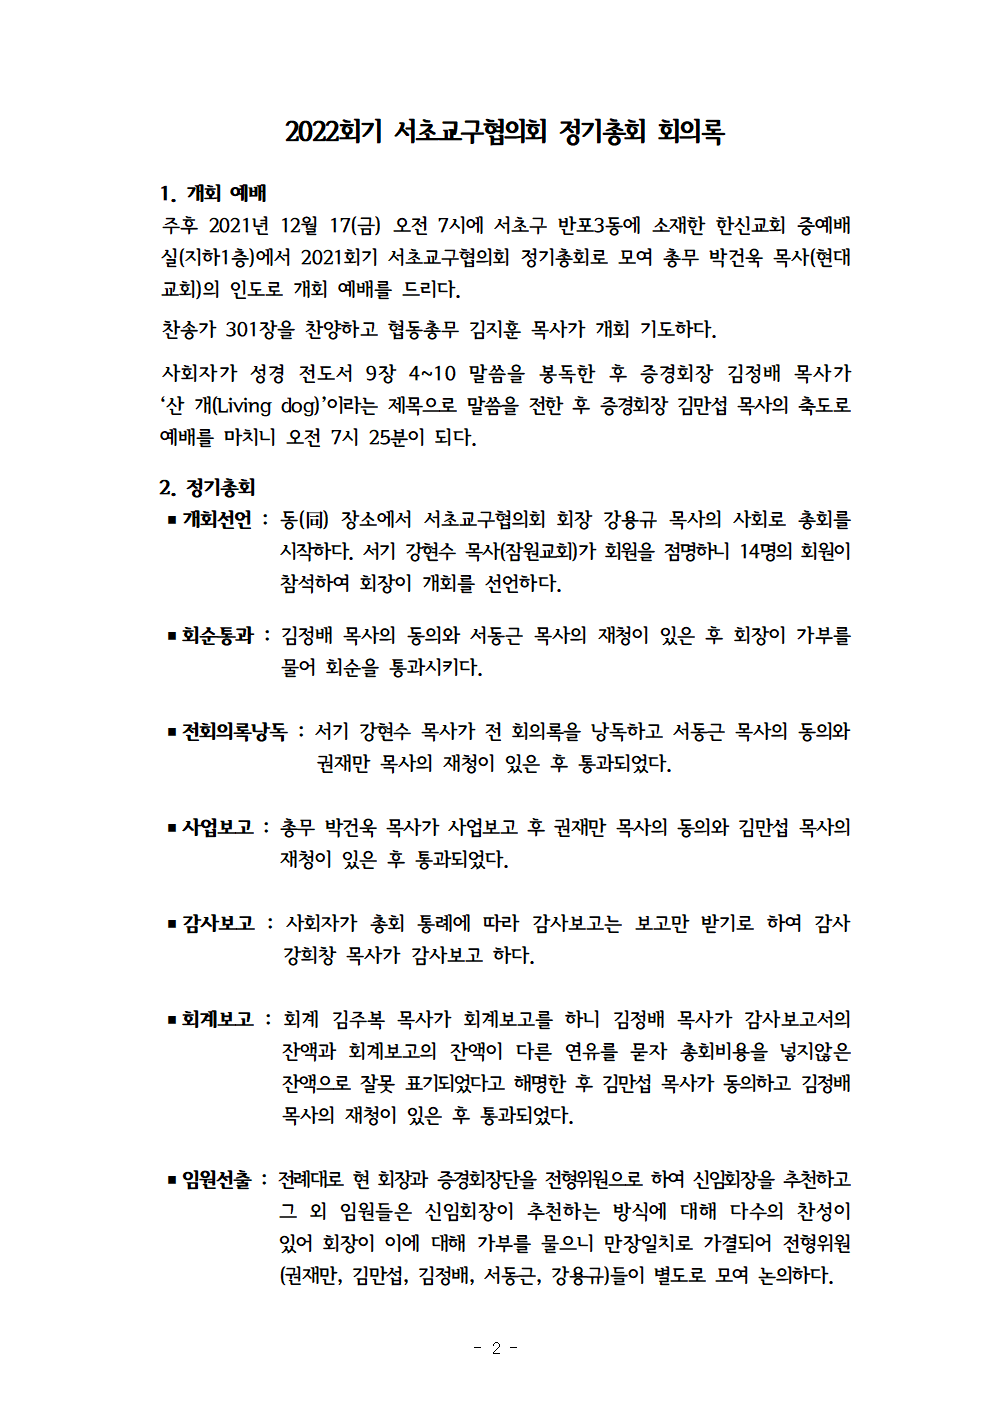 2022회기 서초교구협의회 정기총회자료(12.13.)_홈페이지003.png